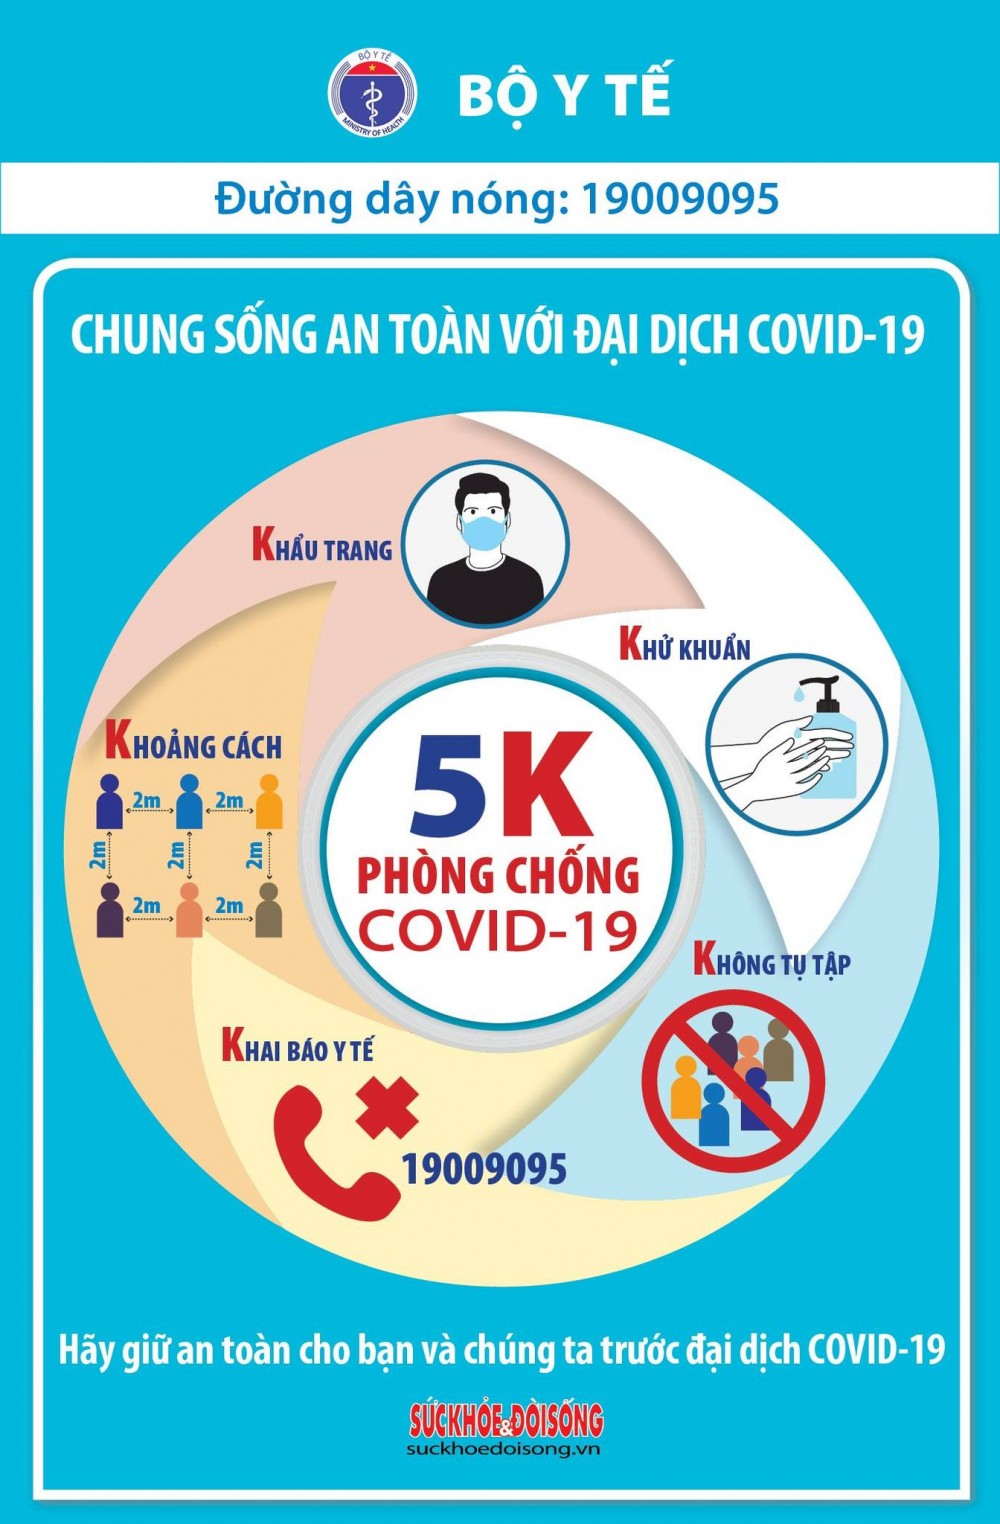 Covid-19 ở Việt Nam sáng 29/4: Không có ca mới, tổng cộng 2.865 ca, hơn 38.500 người đang cách ly